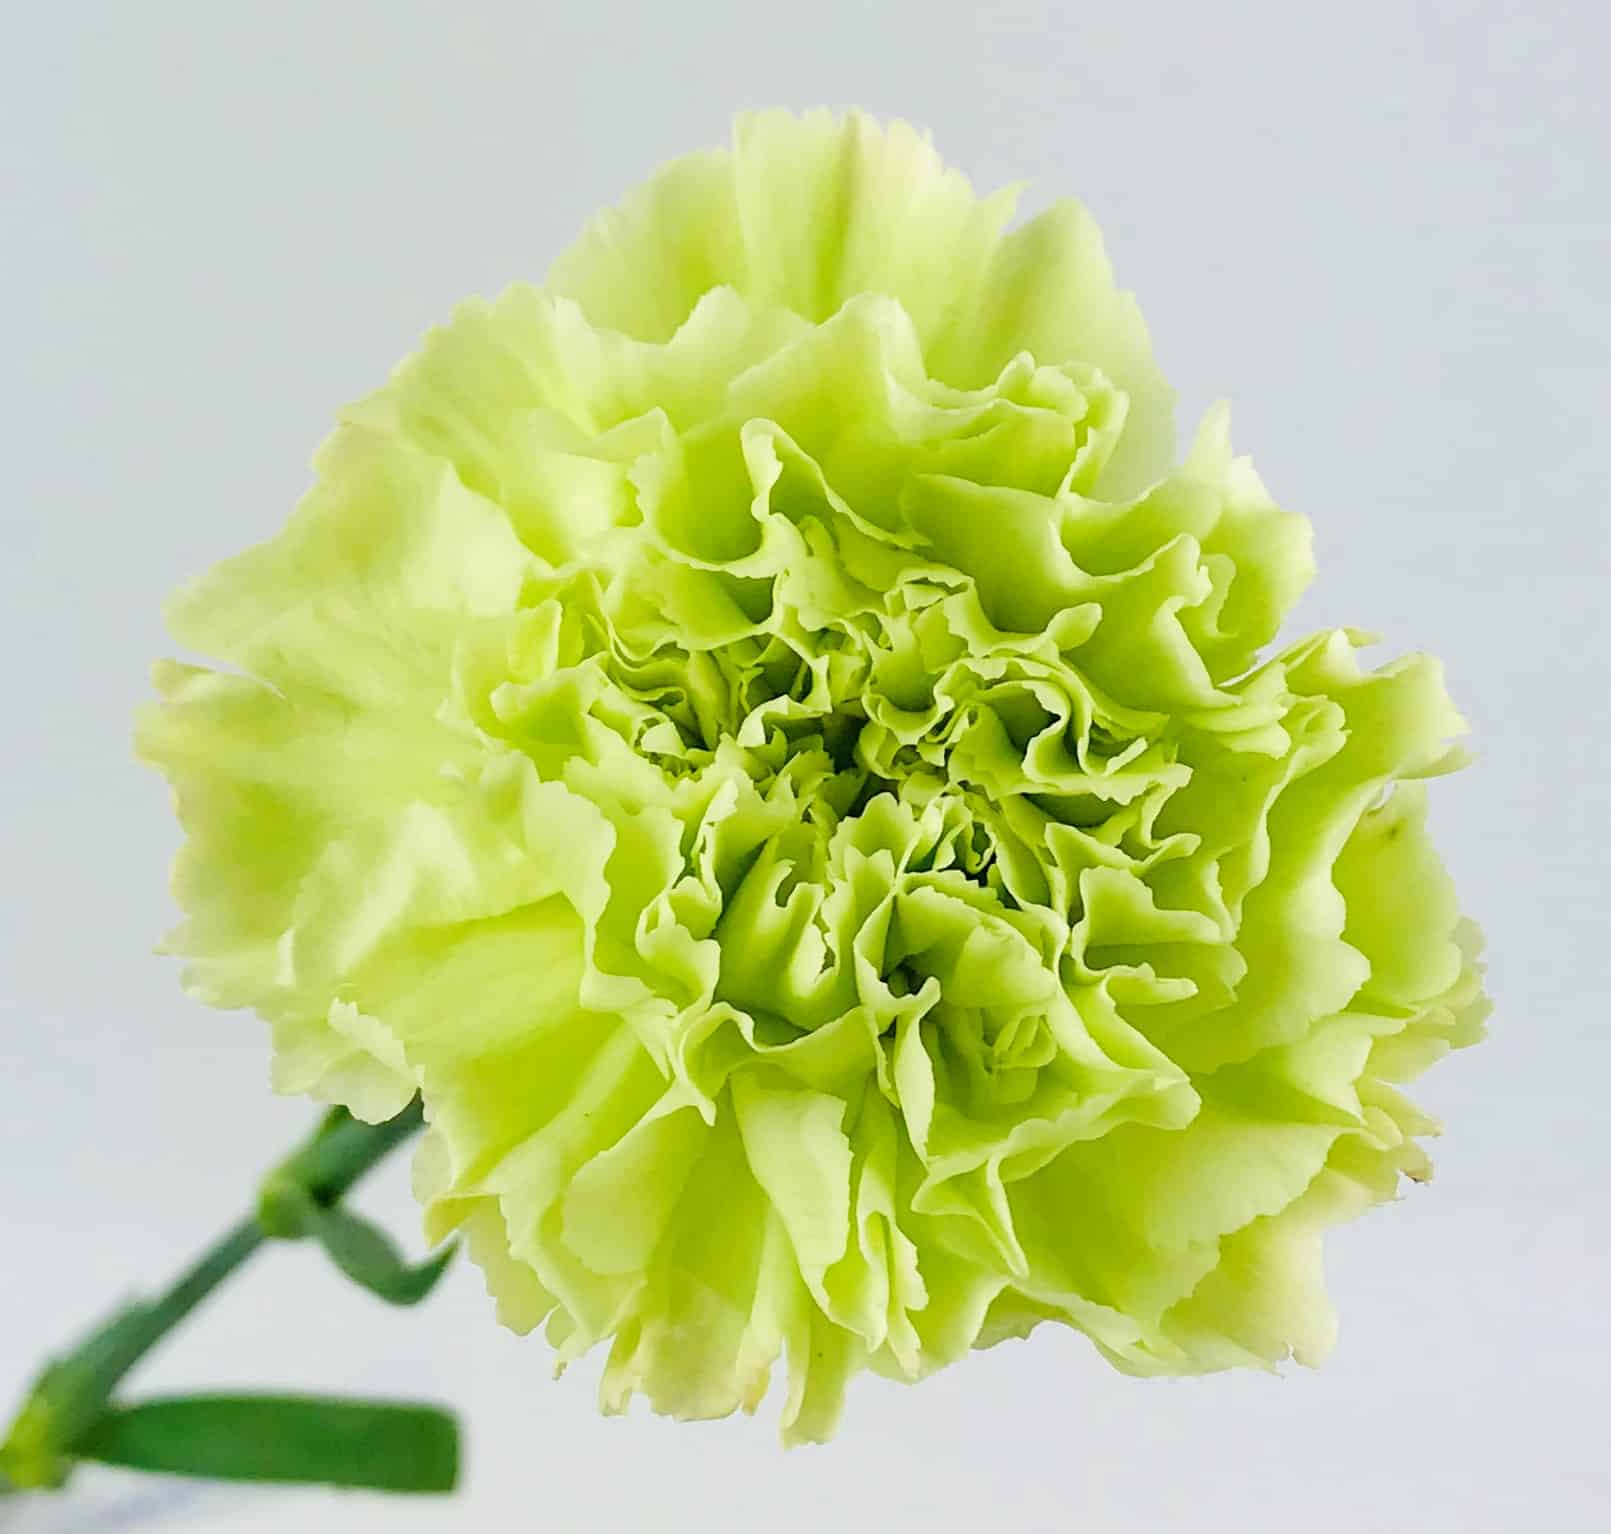 green carnation flower